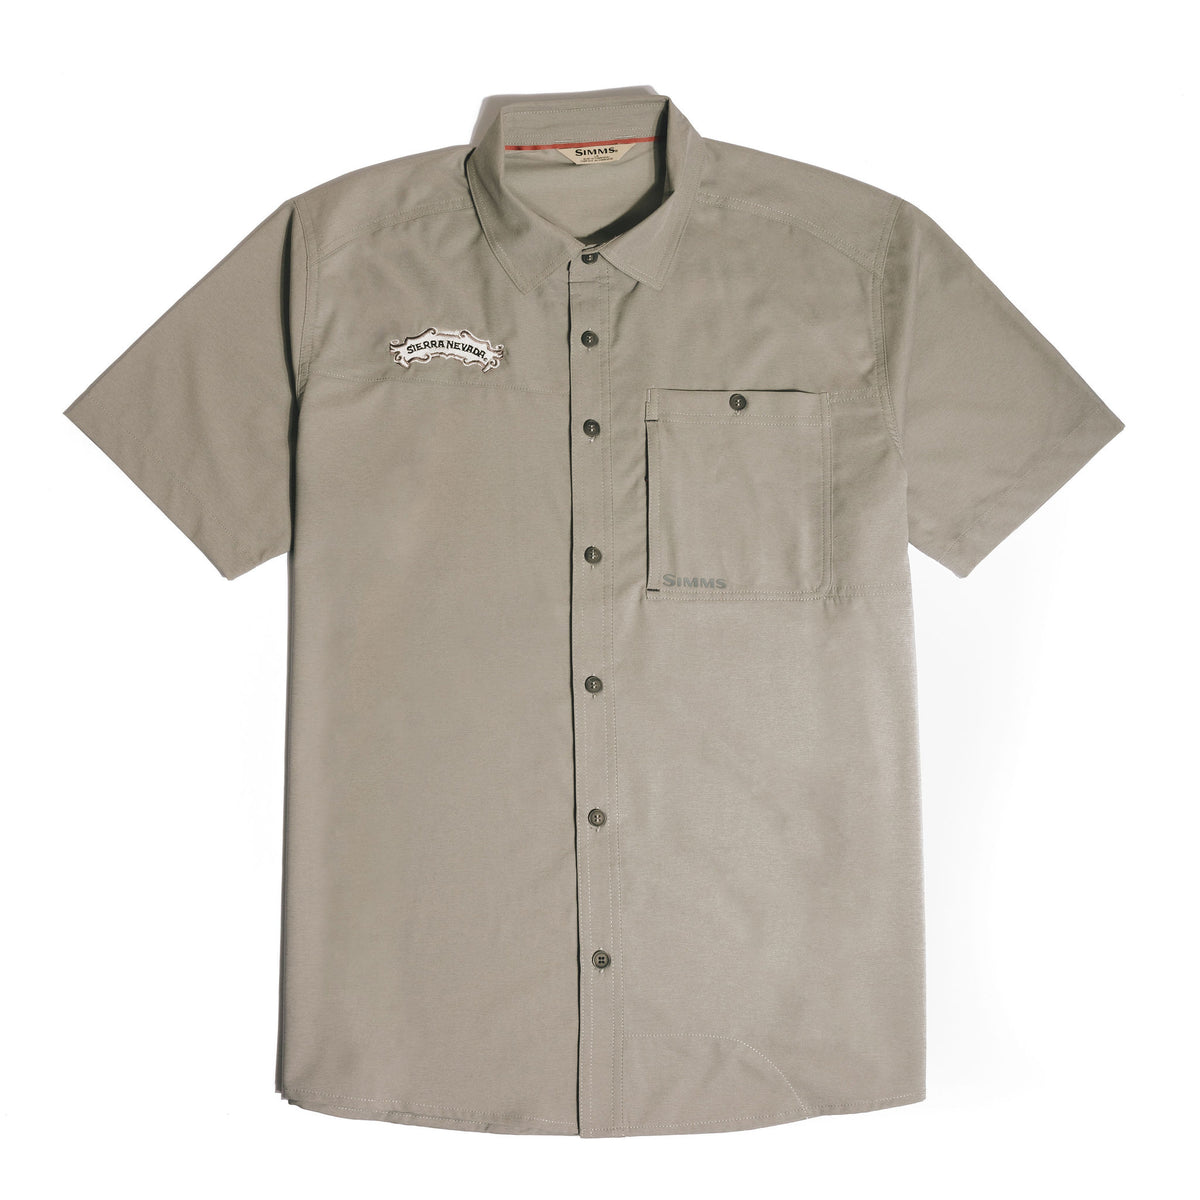 Sierra Nevada x Simms Challenger Short Sleeve Shirt - front view